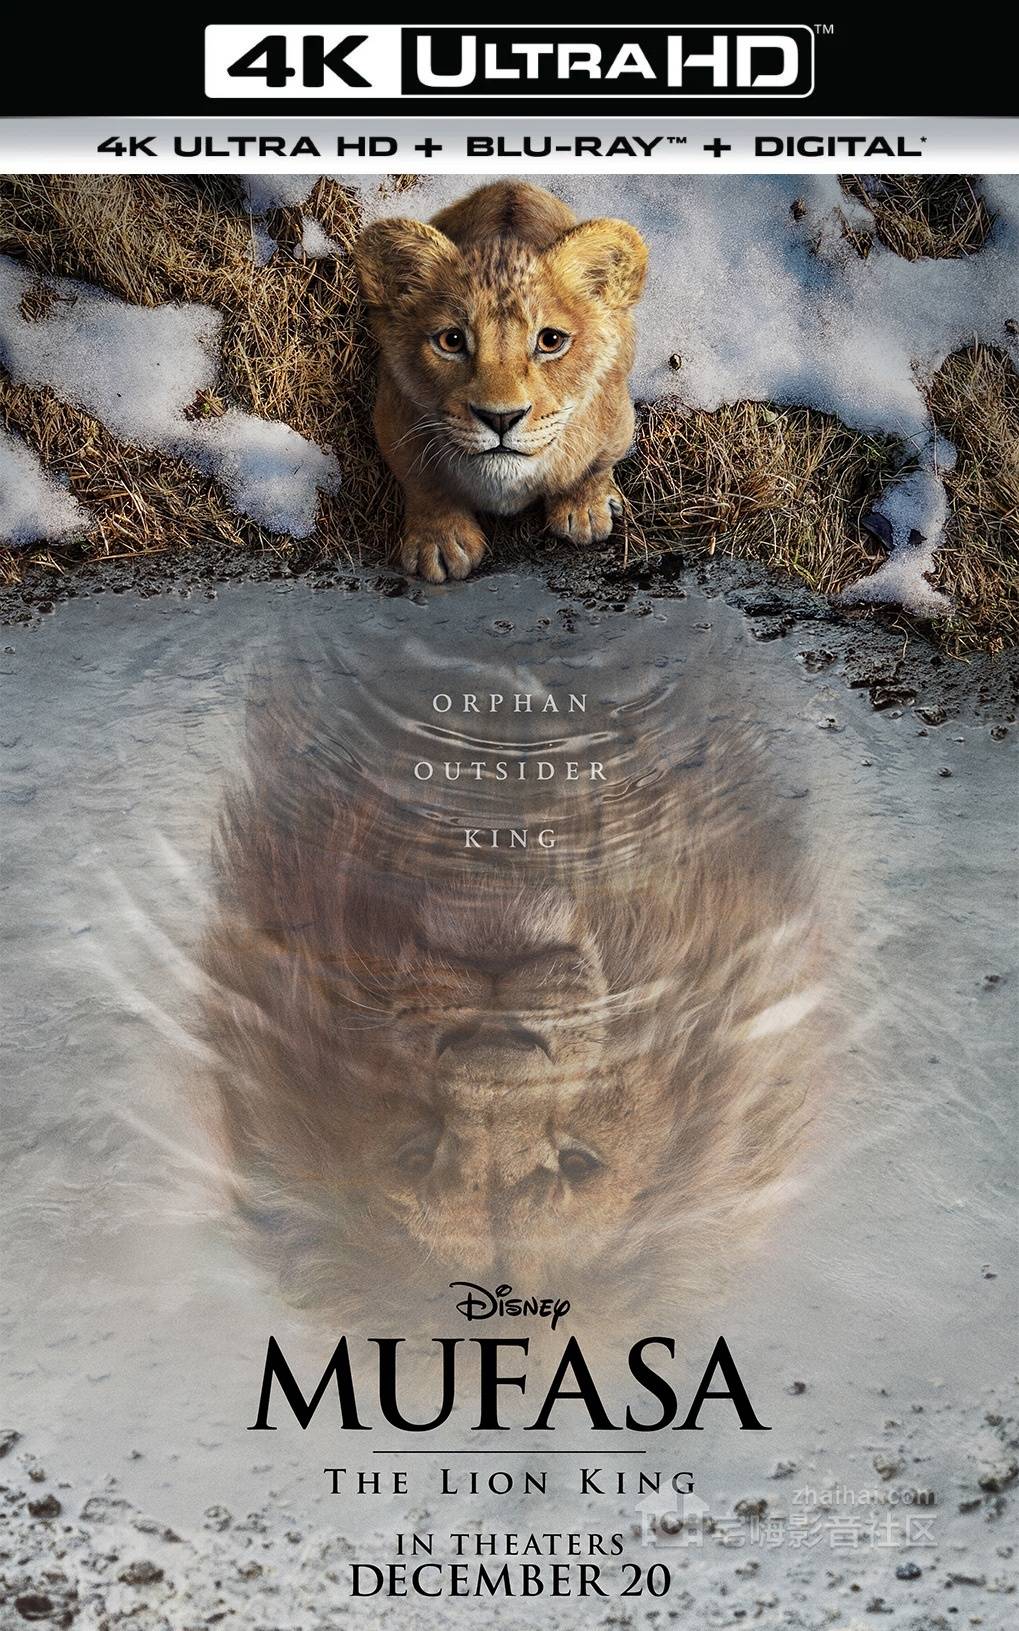   引起 《狮子王:木法沙的传说》4K蓝光电影即将上映:重返温暖的非洲草原。 